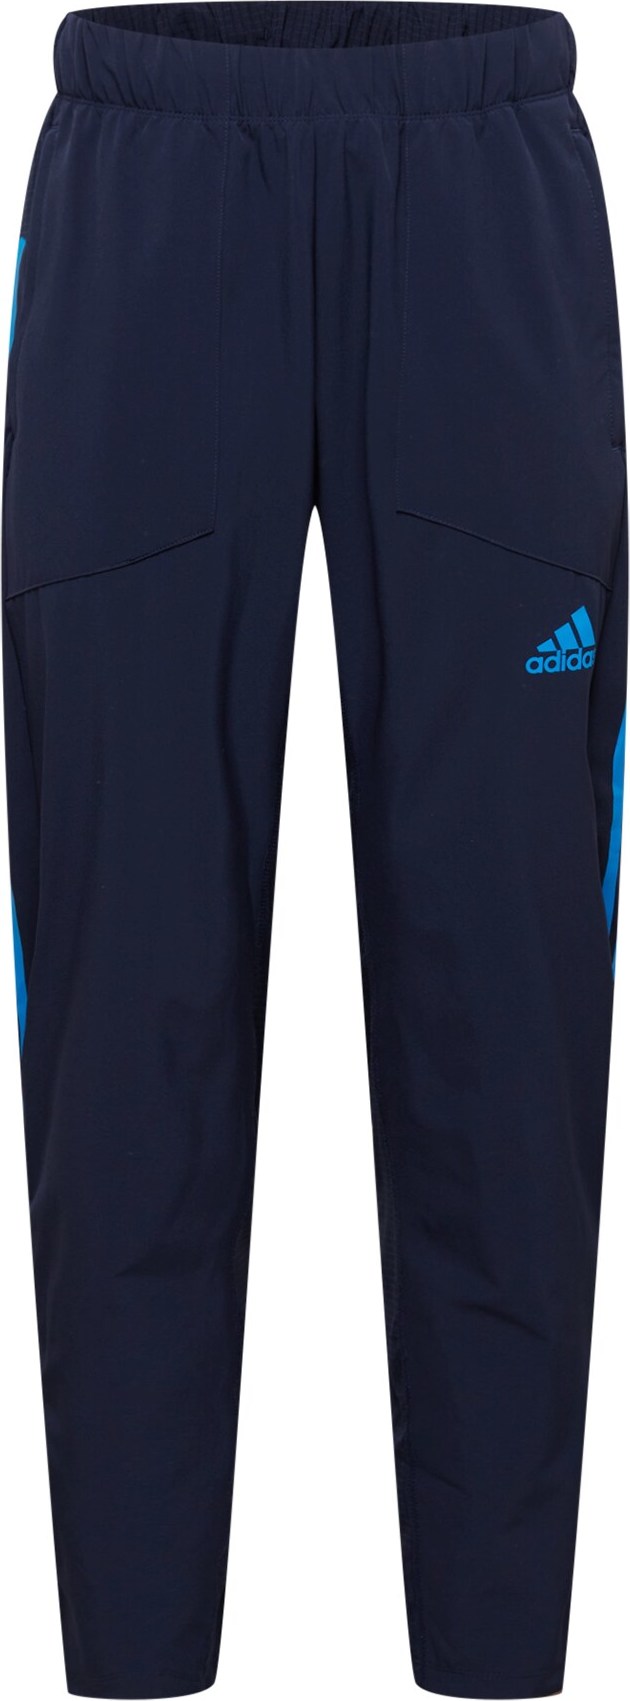 ADIDAS PERFORMANCE Sportovní kalhoty modrá / tmavě modrá